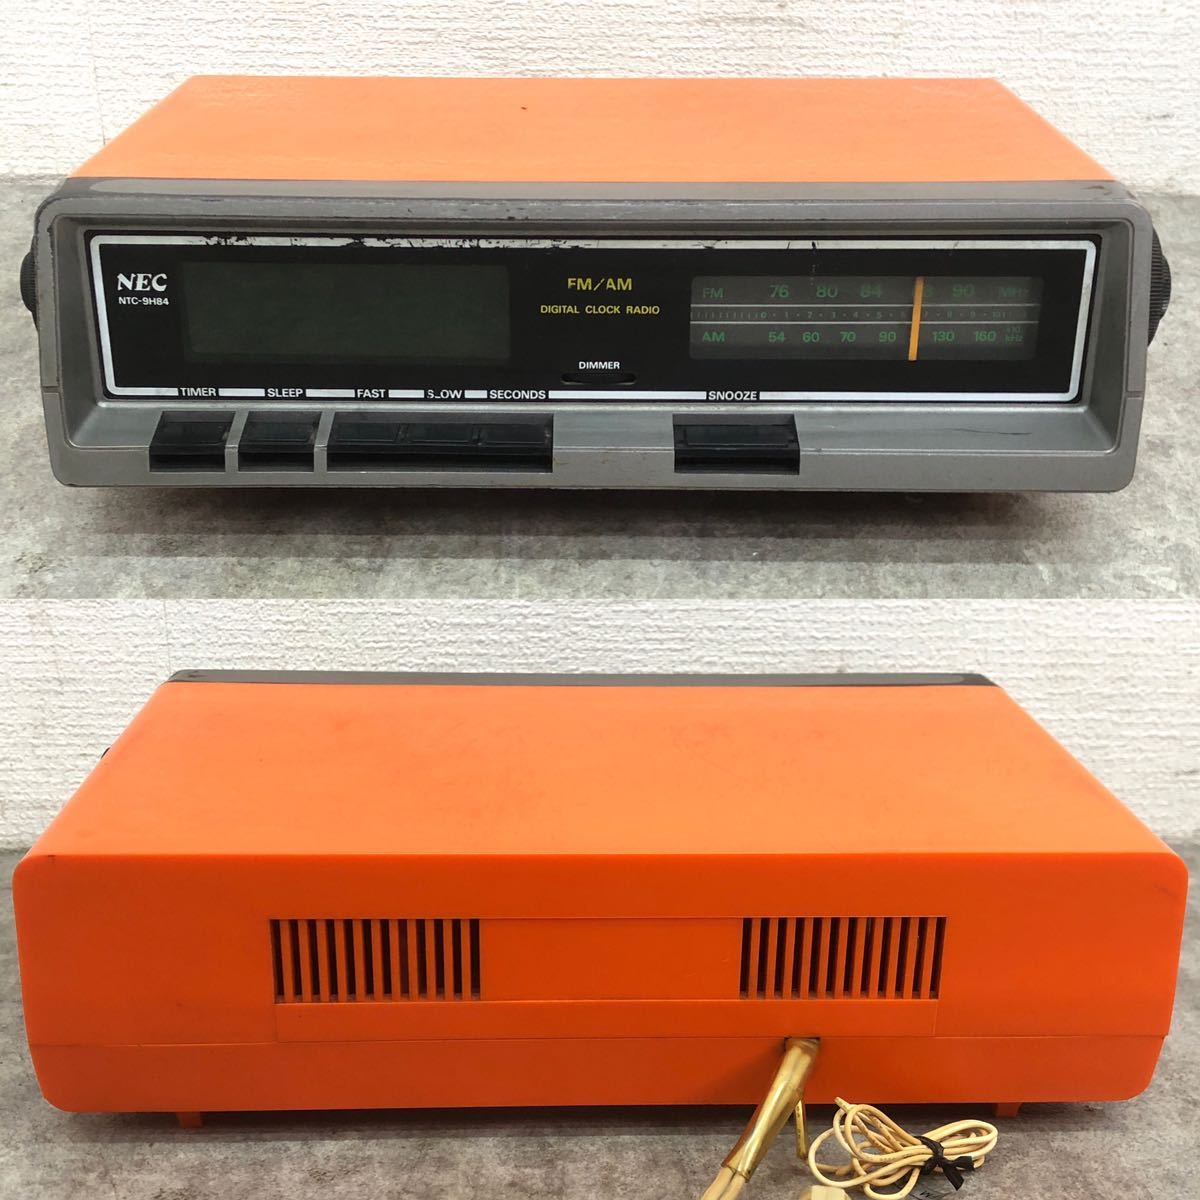 □NET レトロ ラジオ付きデジタル時計 NTC-9H84 NTC9H84 オレンジ コレクション 置物 オブジェ FM/AM 時計 動作確認動画あり □23082603_画像2